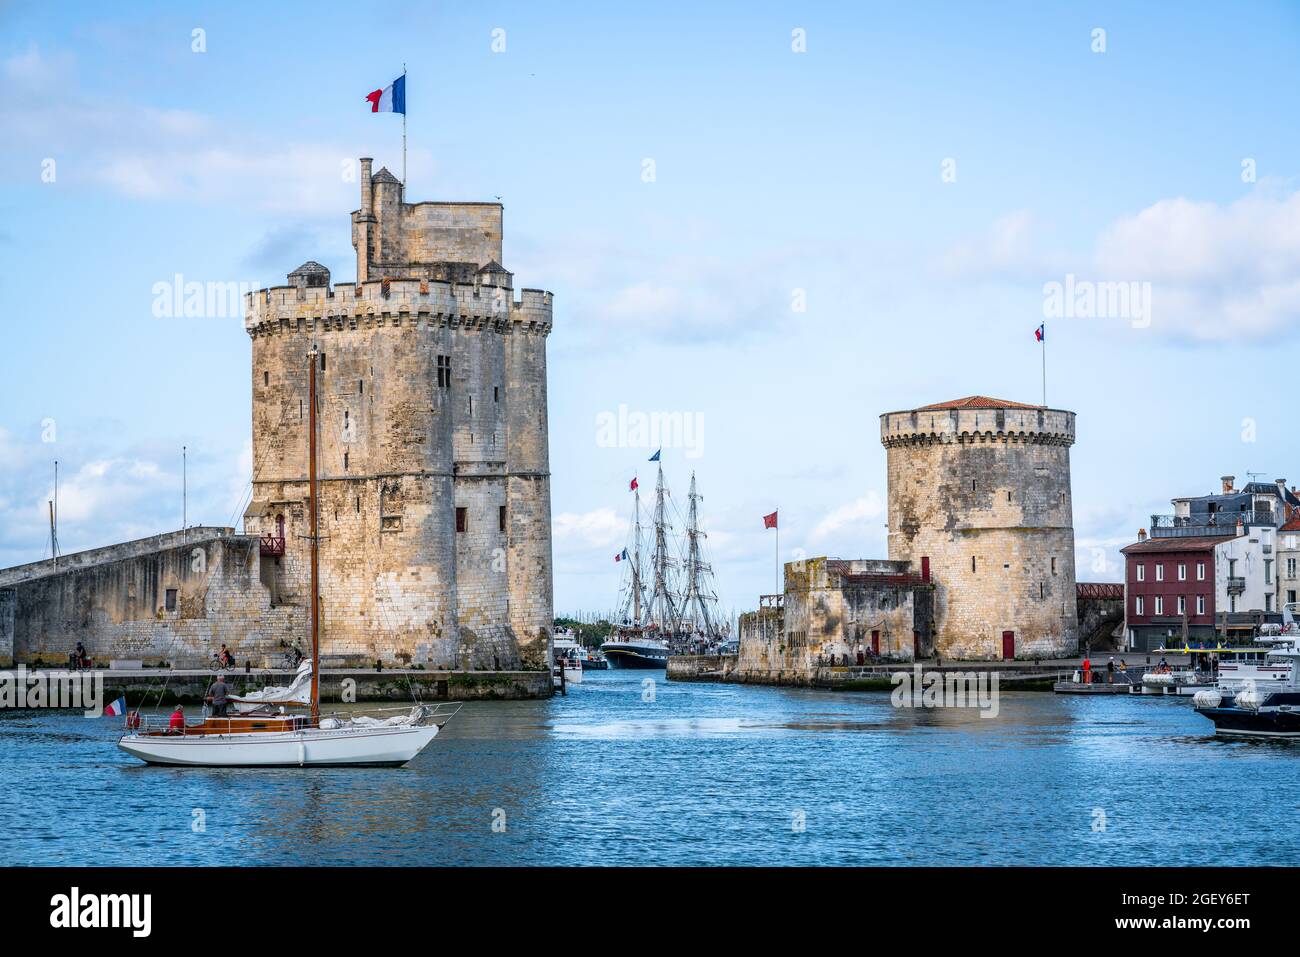 La cadena y las torres de San Nicolás de La Rochelle durante el verano con el cielo azul que marca la entrada del antiguo puerto de La Rochelle Francia Foto de stock